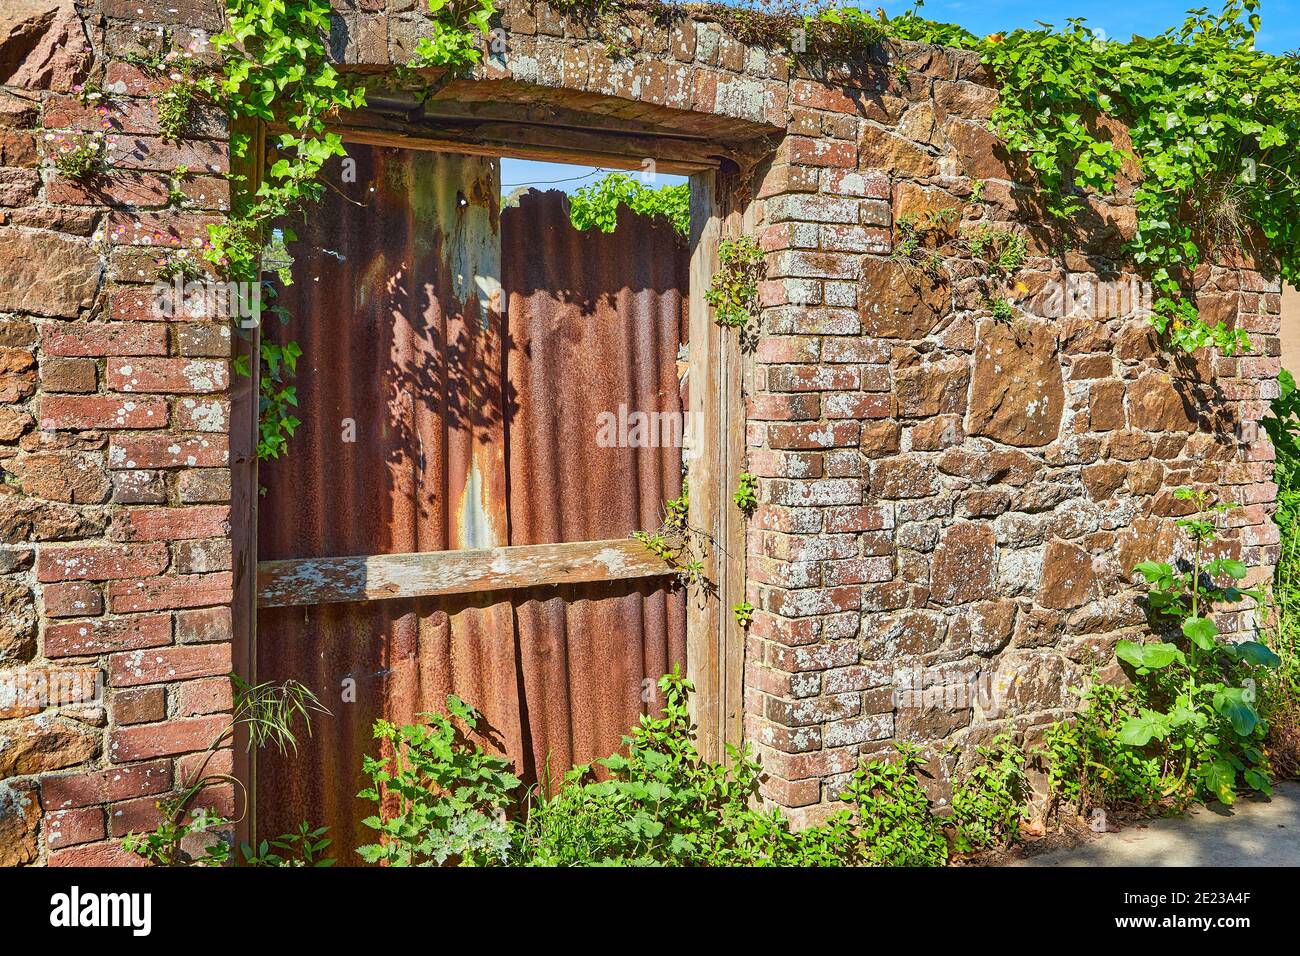 Immagine di un vecchio muro di pietra con una vecchia apertura della porta con cornice di mattoni che è stato bloccato con rude lastre di ferro corigate al sole. Foto Stock